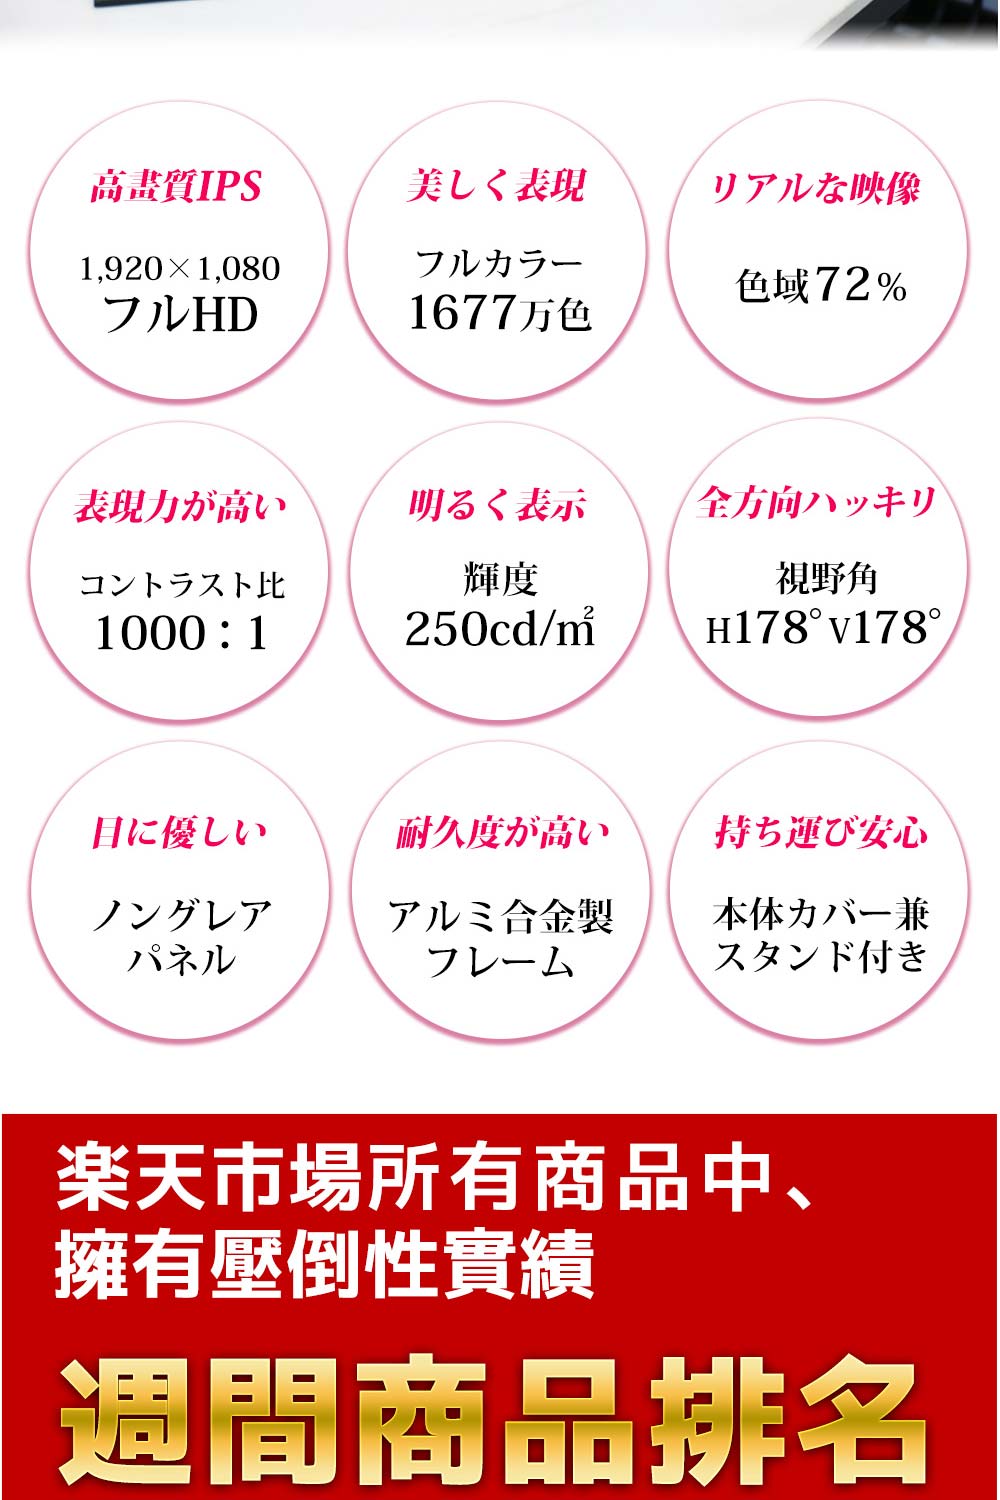 REAICE 日本Winten 13.3吋IPS超薄型可攜式